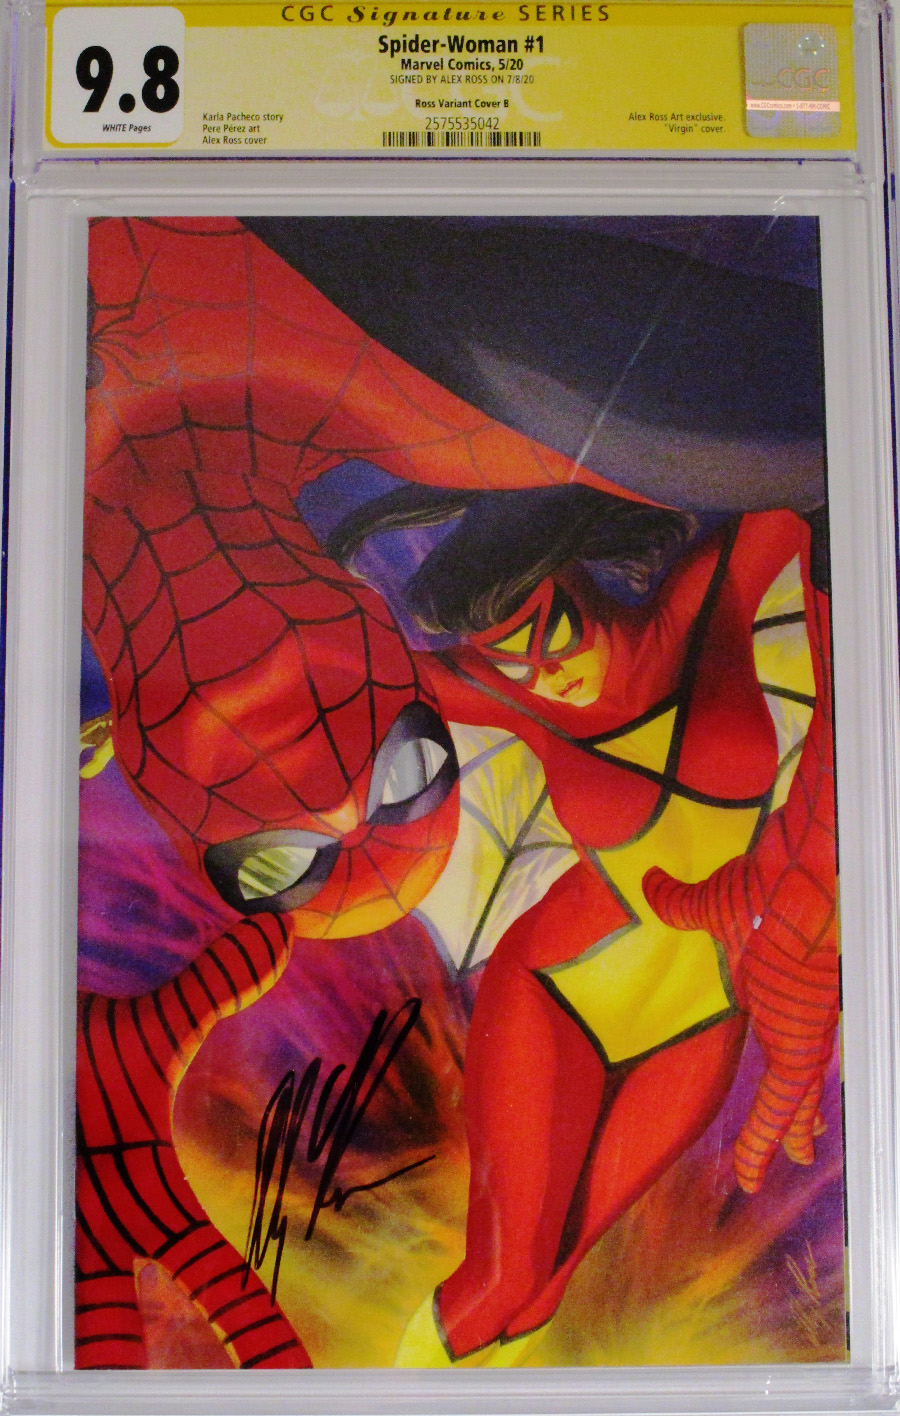 Spider-Woman Vol 7 #1 Cover T CGC Signature Series 9.8 Alex Ross Signature